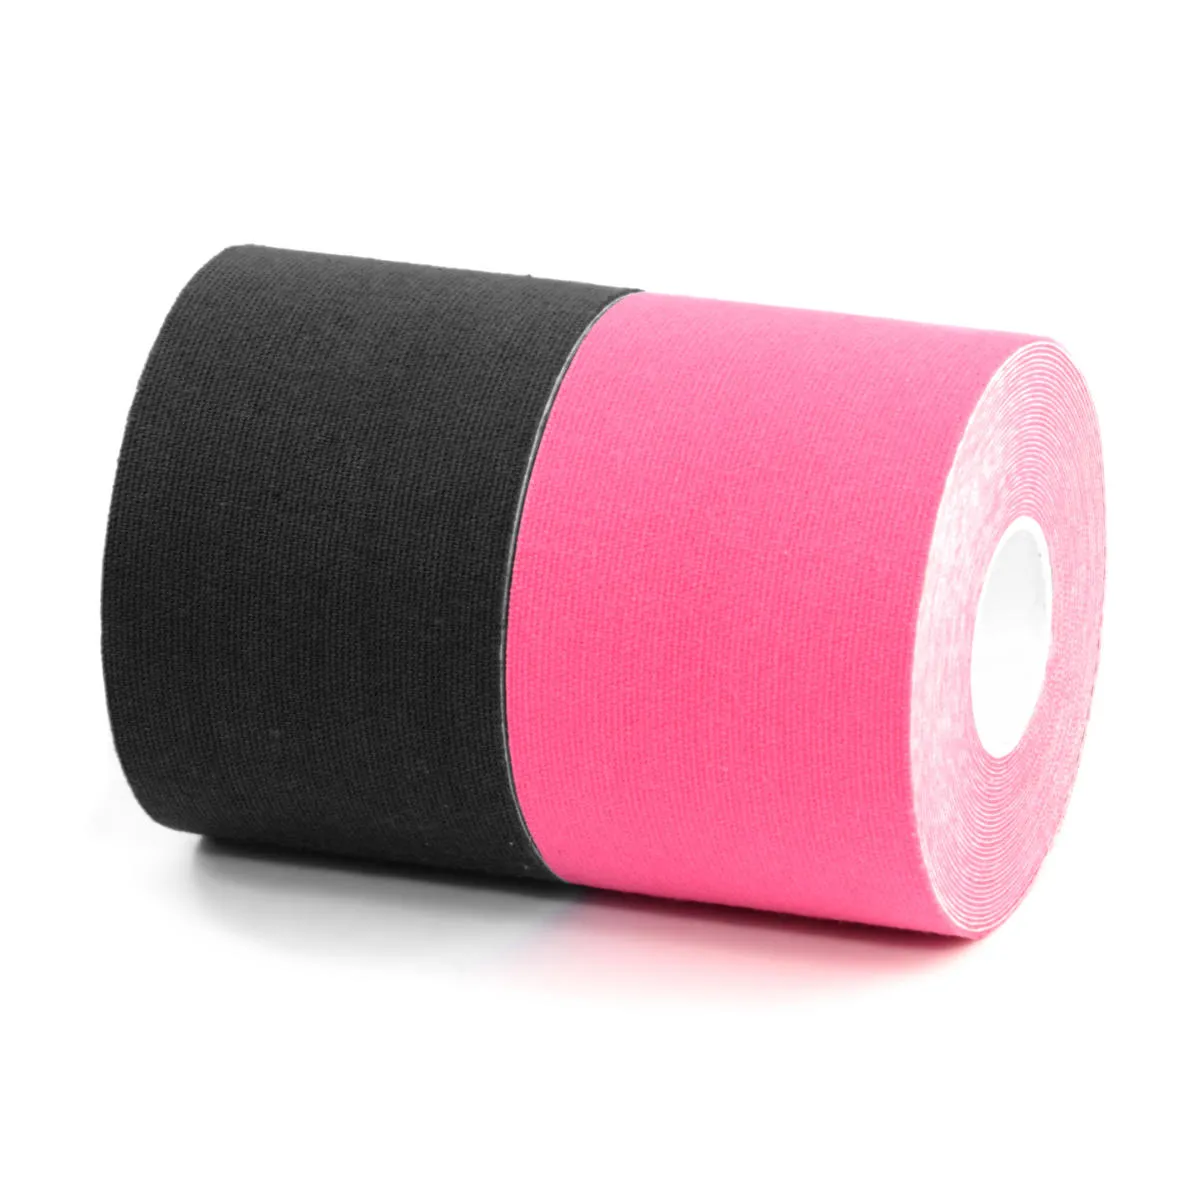 BronVit Sport Kinesio Tape set 5 cm x 6 m tejpovací páska 2 ks černá + růžová